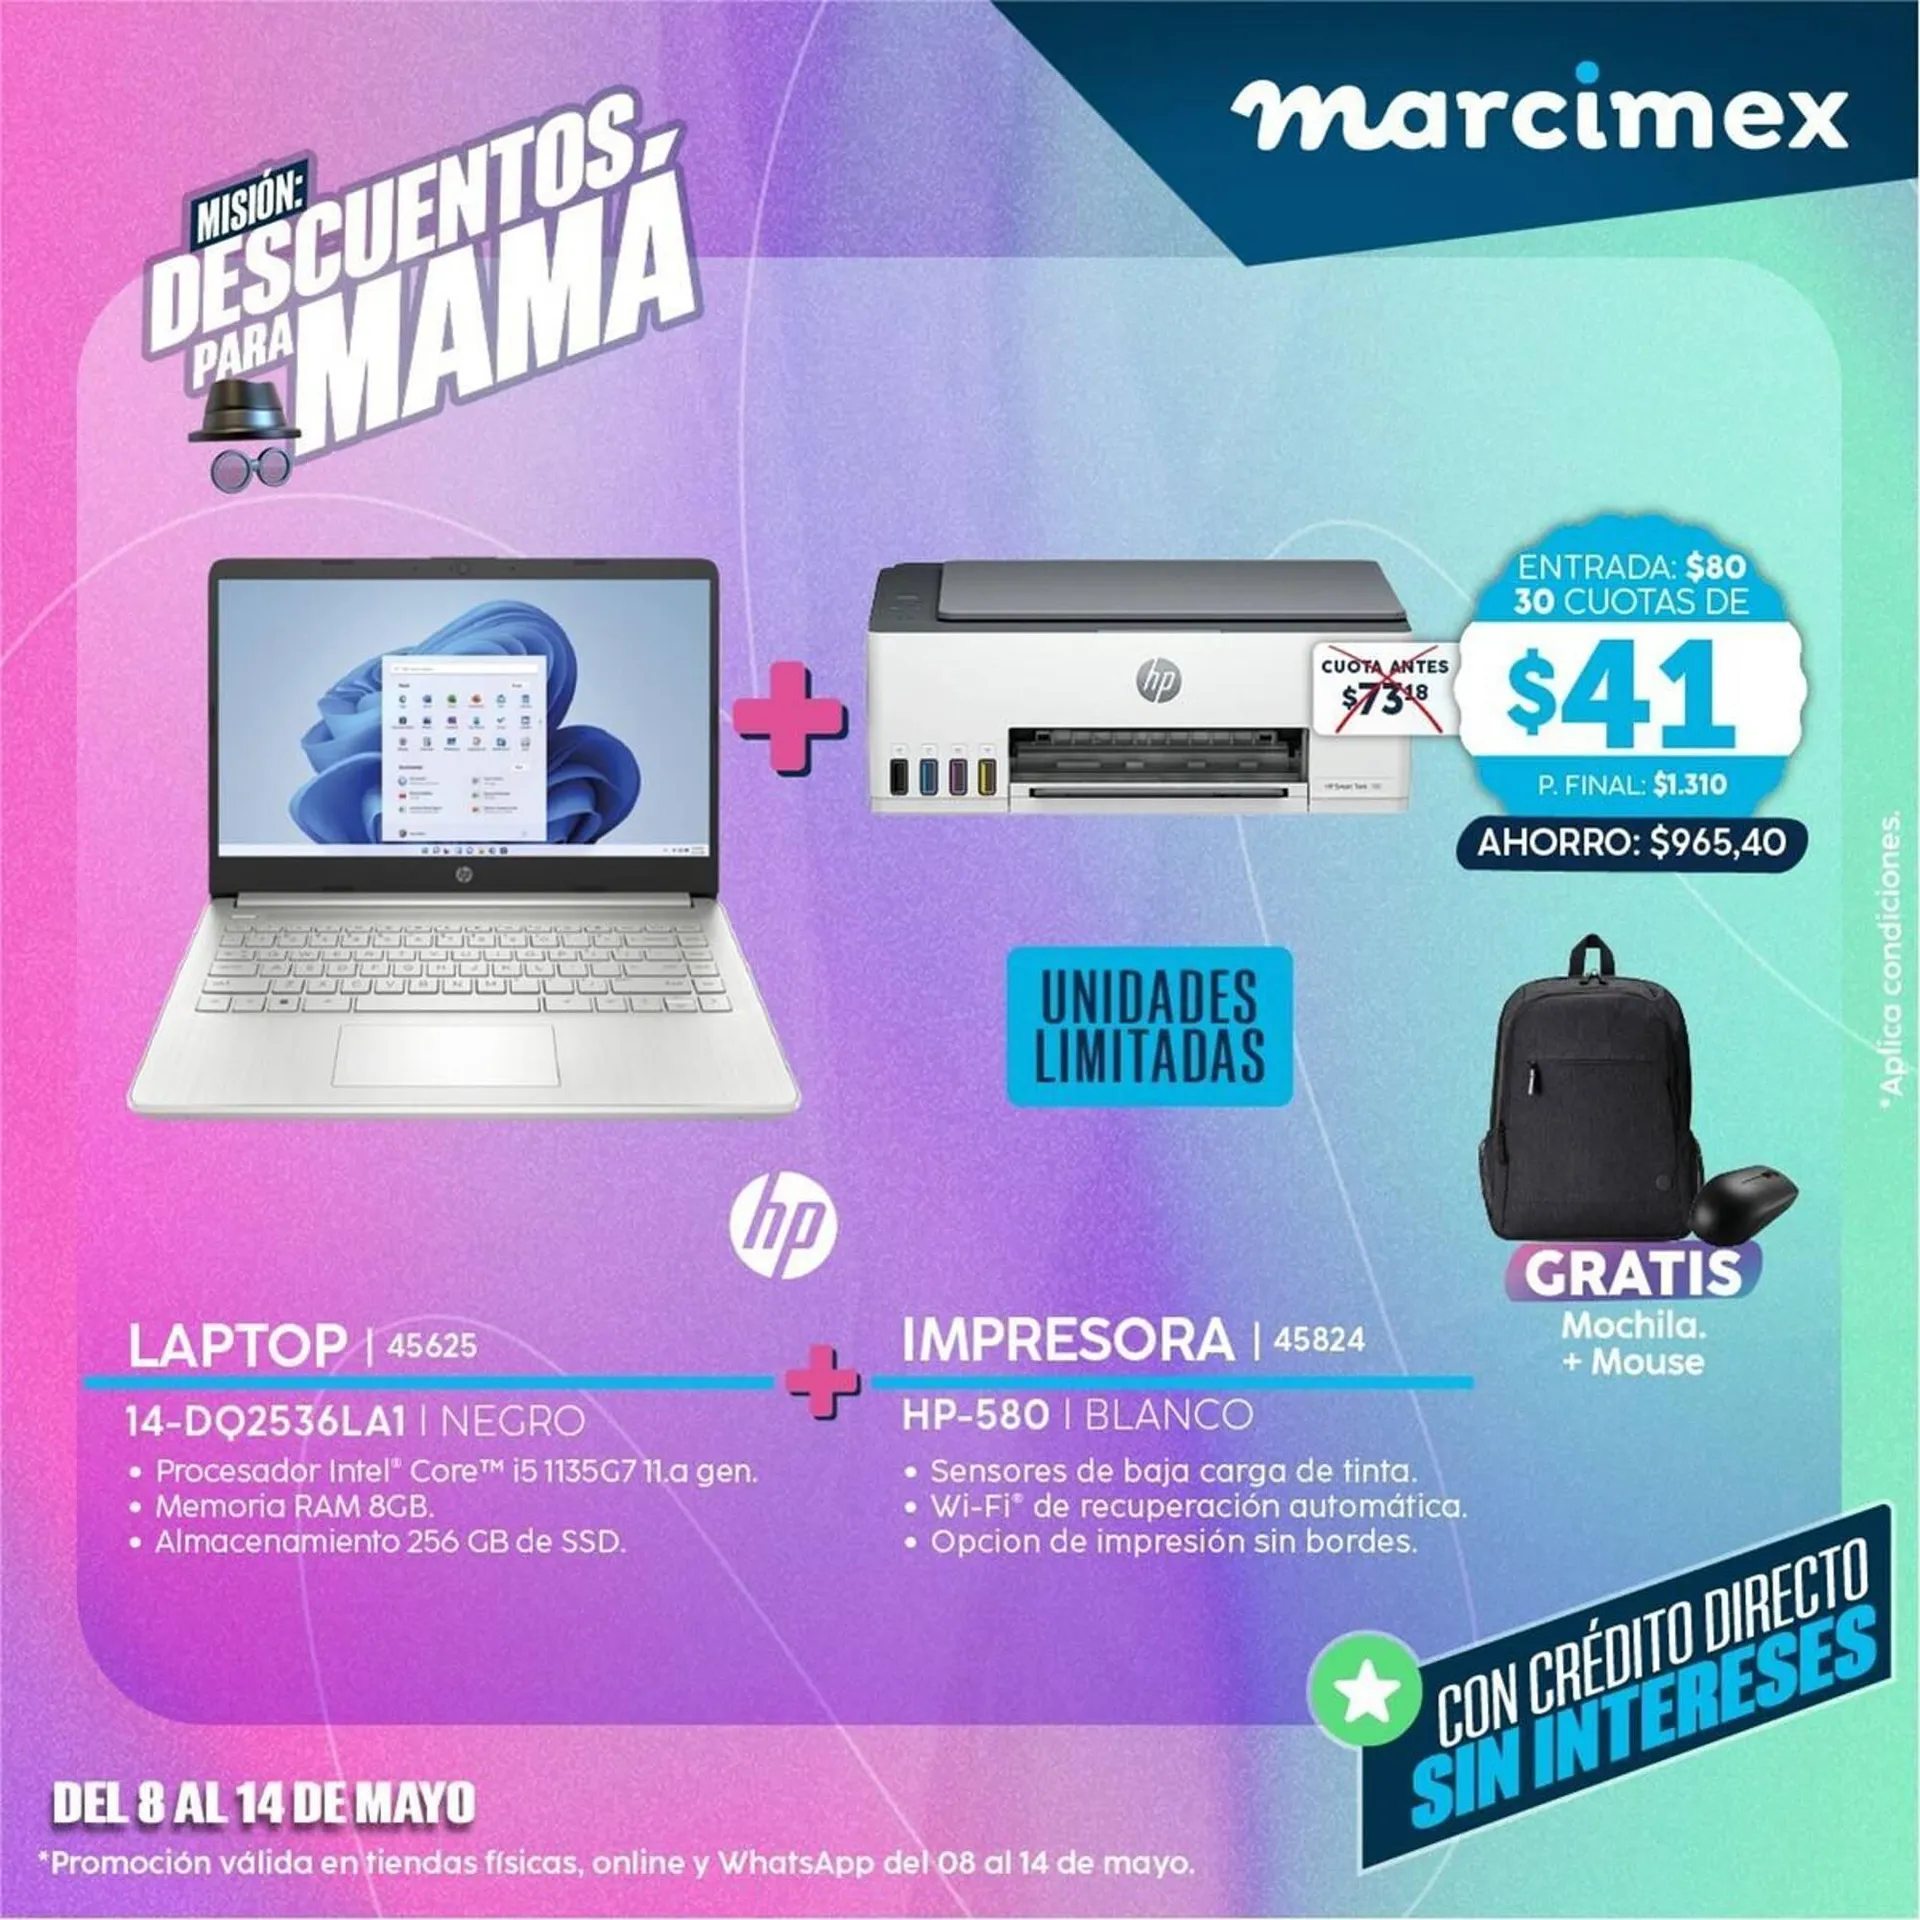 Catálogo Marcimex - 1